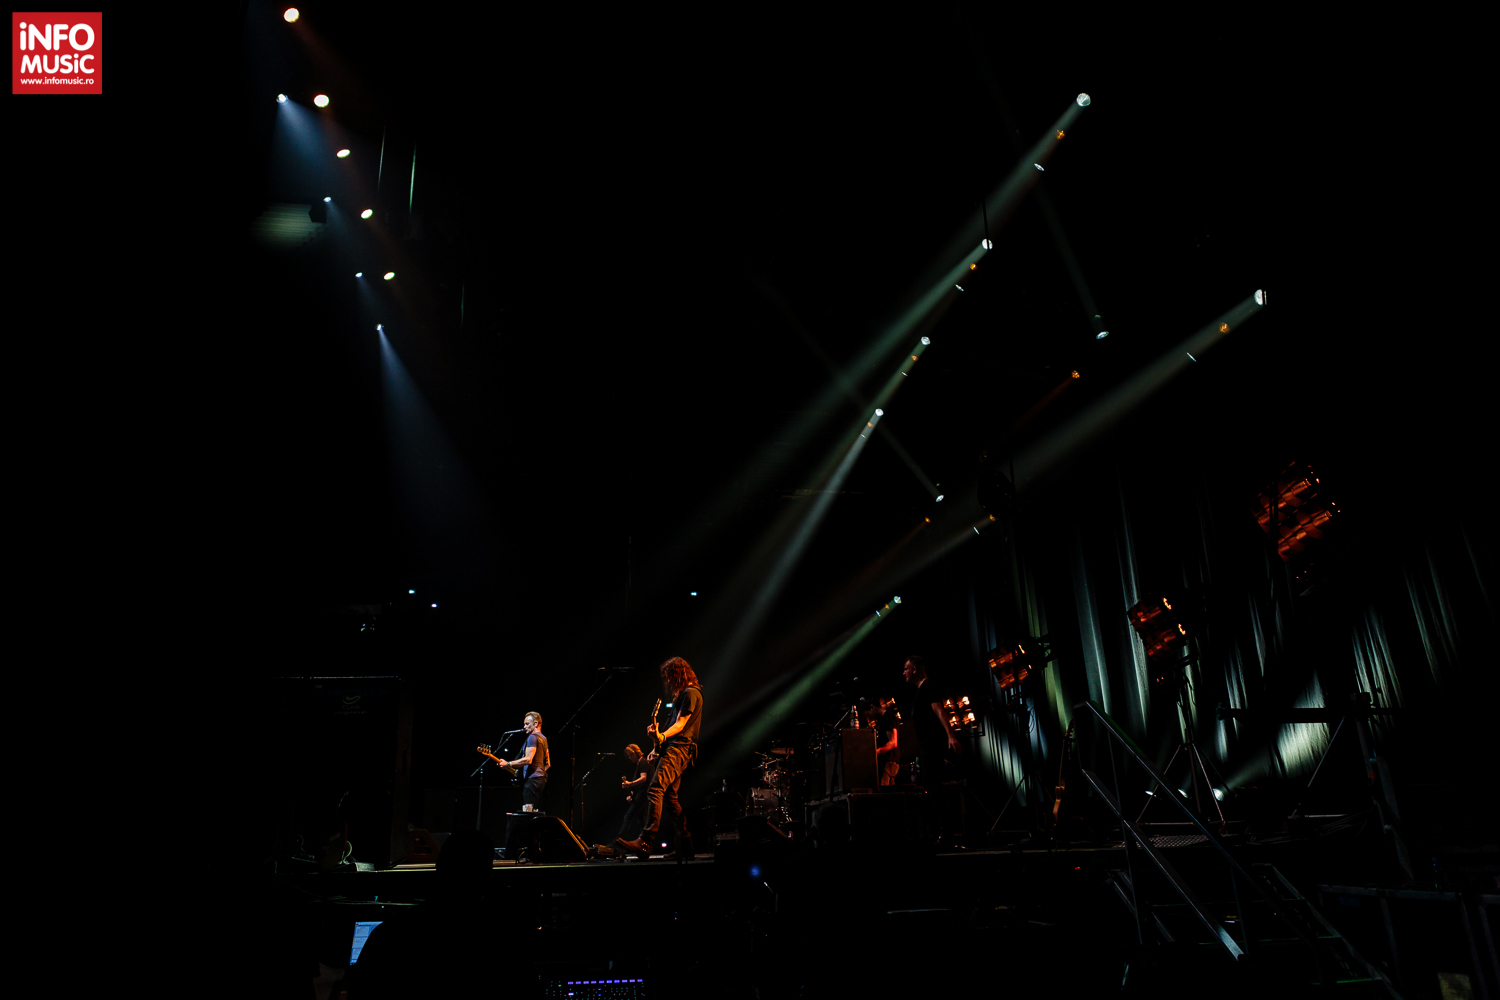 Sting în concert la Cluj-Napoca pe 17 octombrie 2017